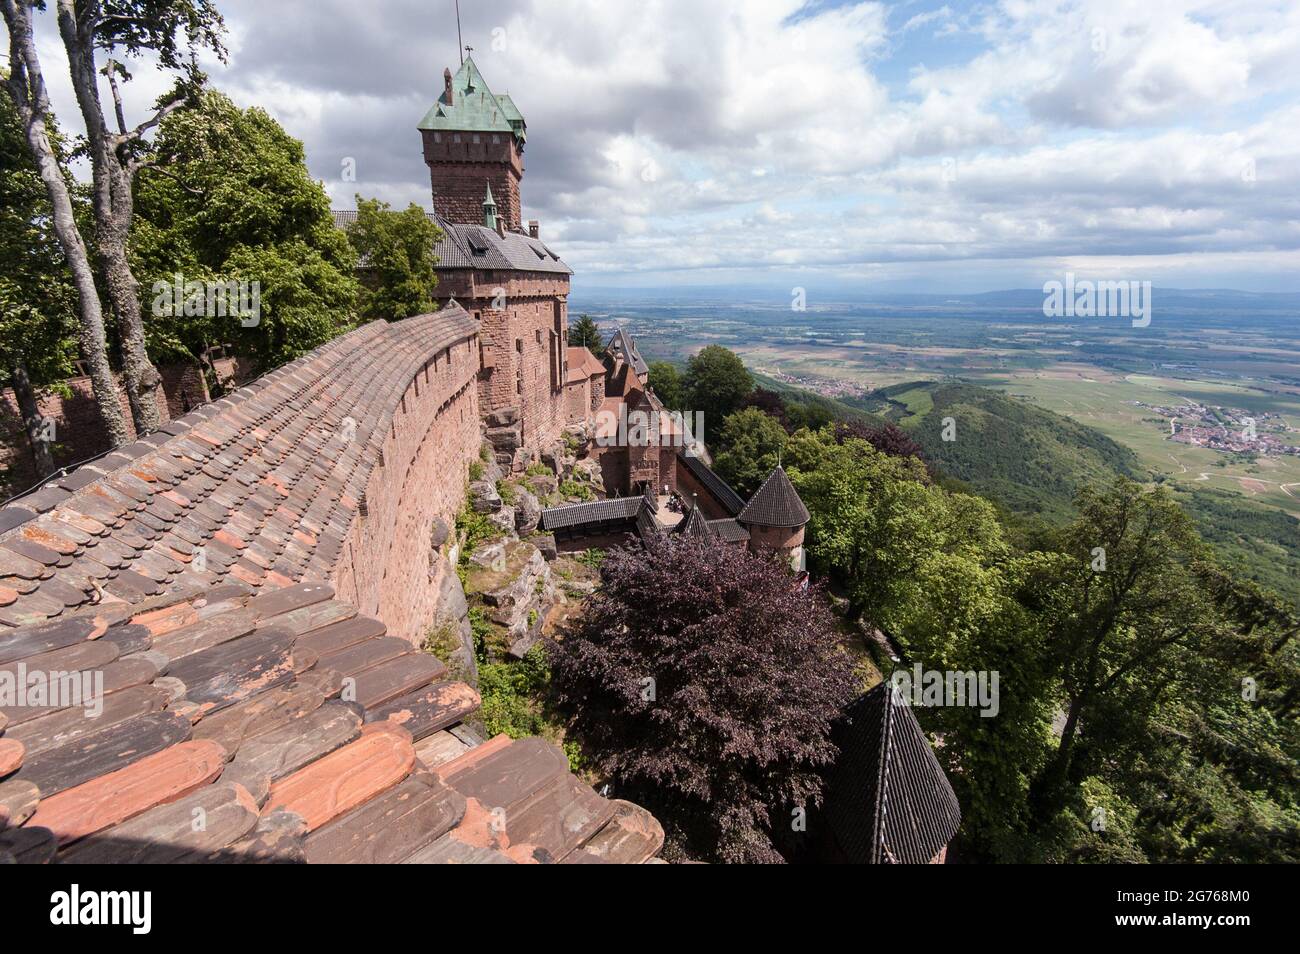 Una vista dalle mura del castello di Haut-Koenigsburg che si affaccia sulla valle del Reno superiore. Le rovine medievali furono ricostruite in forma idealizzata dal 1900 in poi su ordine dell'imperatore tedesco. Oggi è una grande attrazione turistica dell'Alsazia. Foto Stock